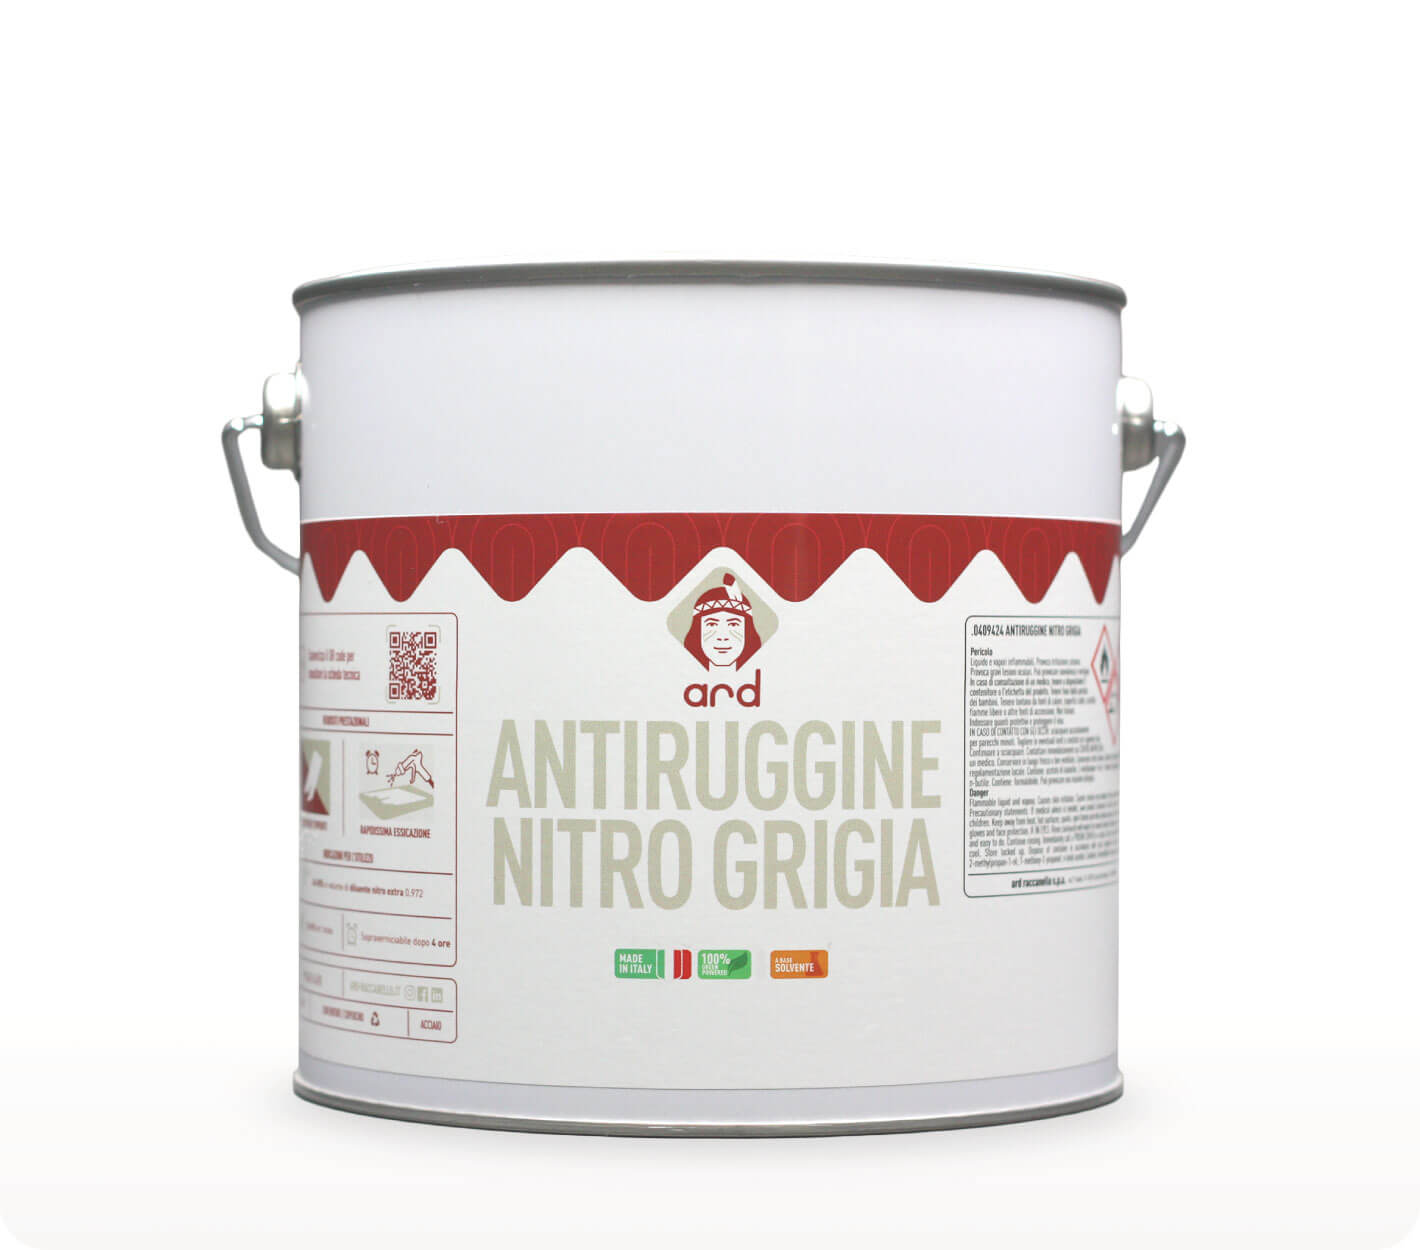 Antiruggine Nitro Grigia - fondo protettivo anticorrosivo - Ard Raccanello